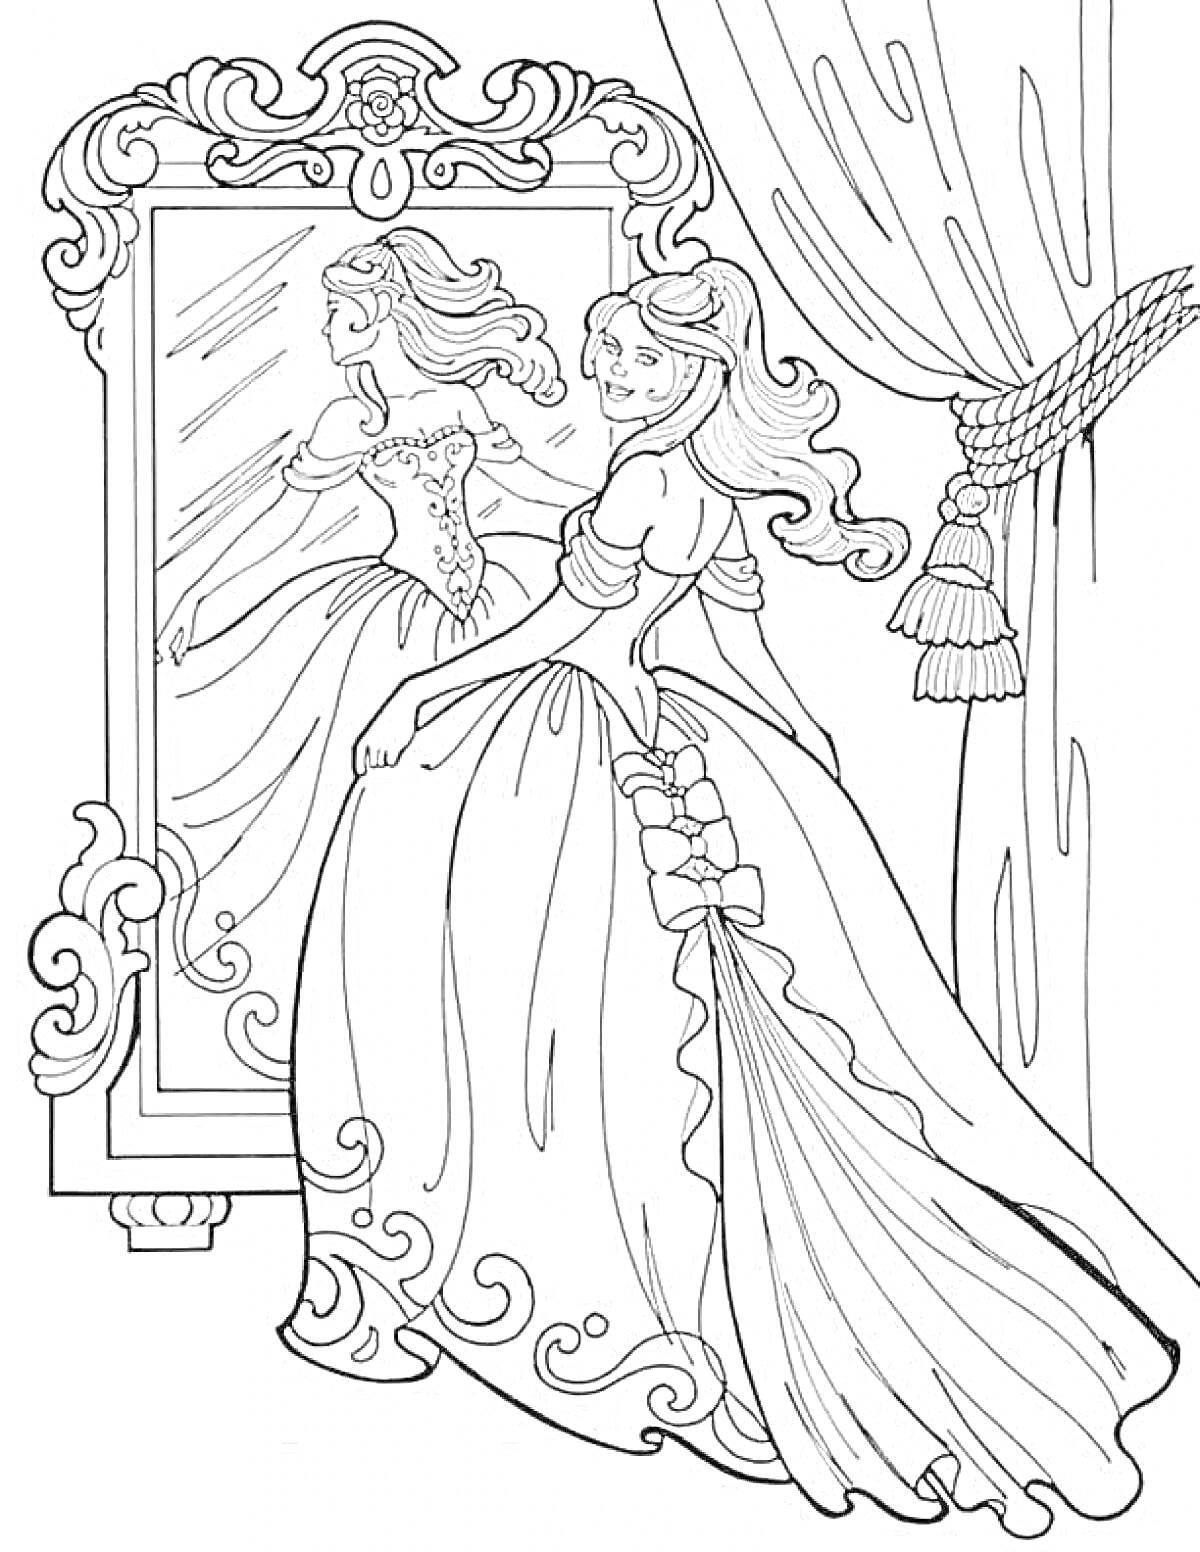 Раскраска Принцесса в замке перед зеркалом, с шторами и замысловатым узором на платье